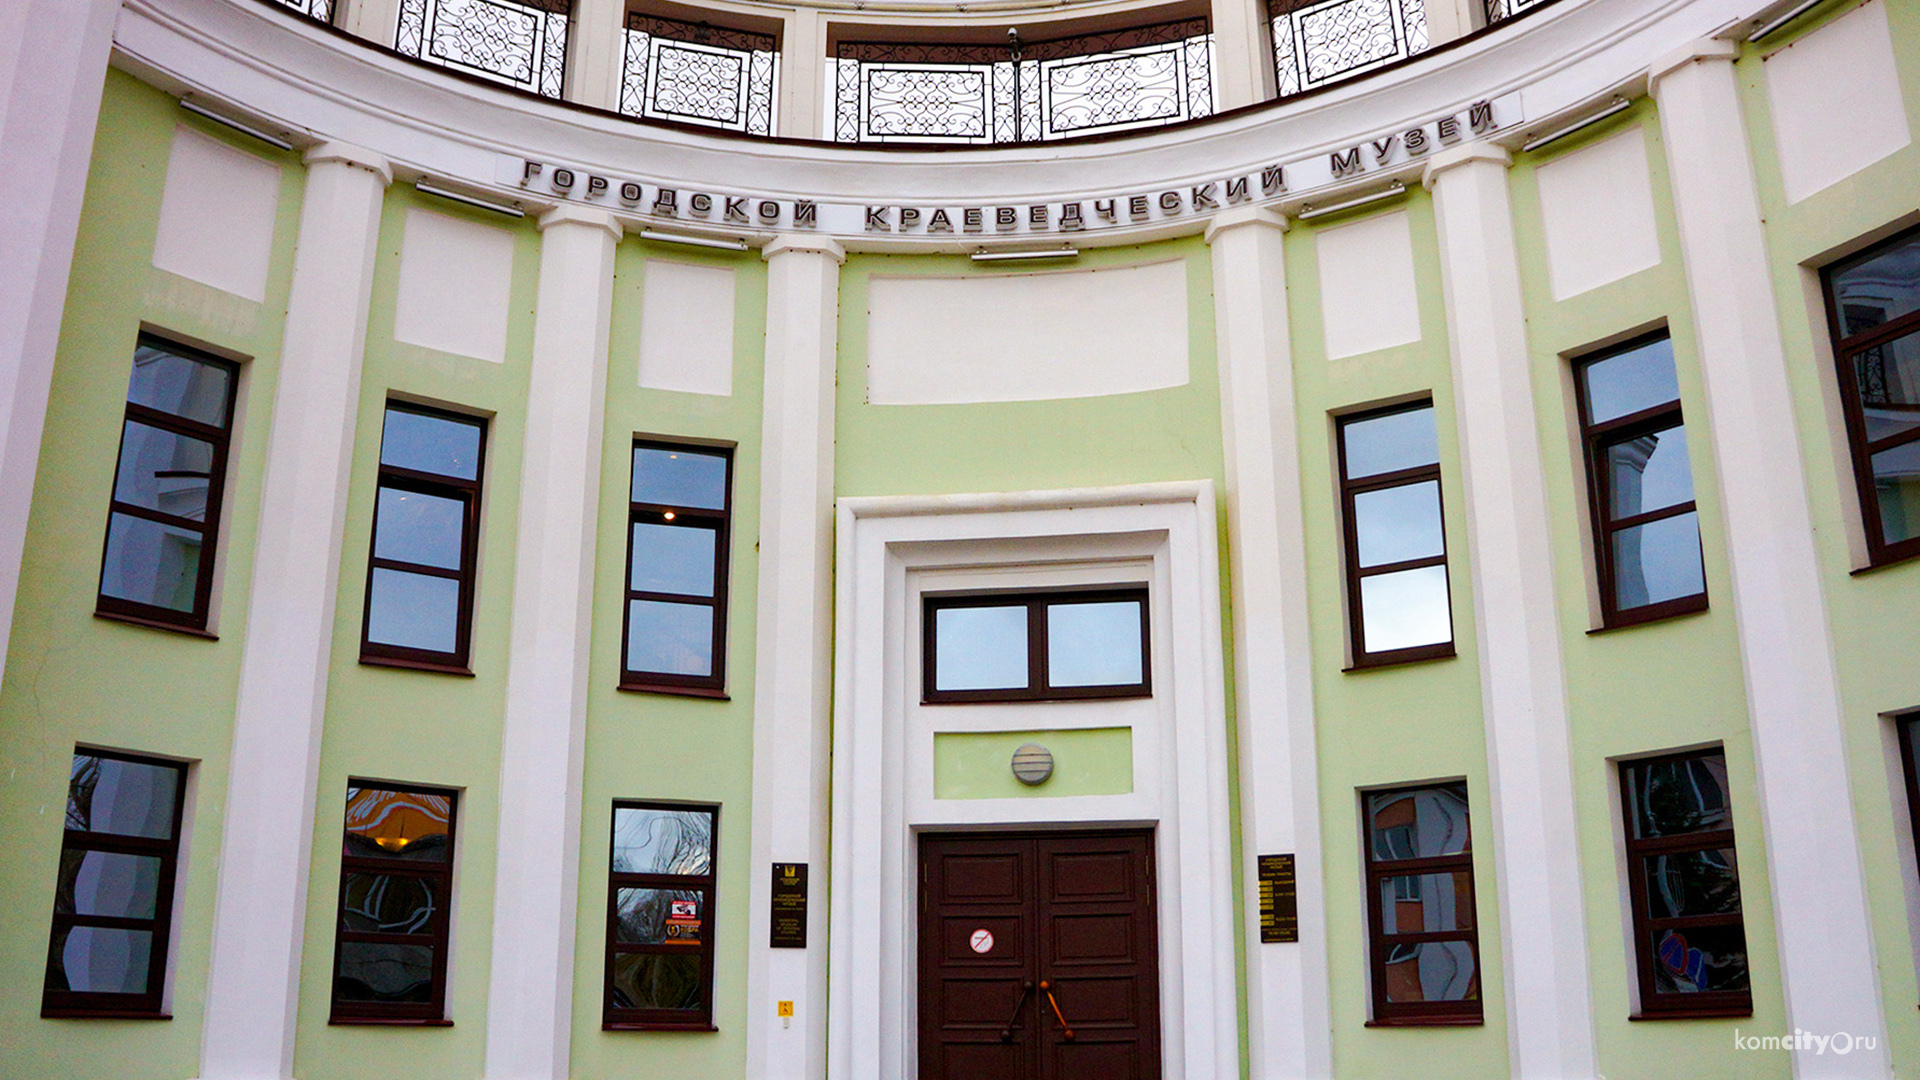 В воскресенье Краеведческий музей Комсомольска-на-Амуре проведёт День открытых дверей в честь своего 80-летия